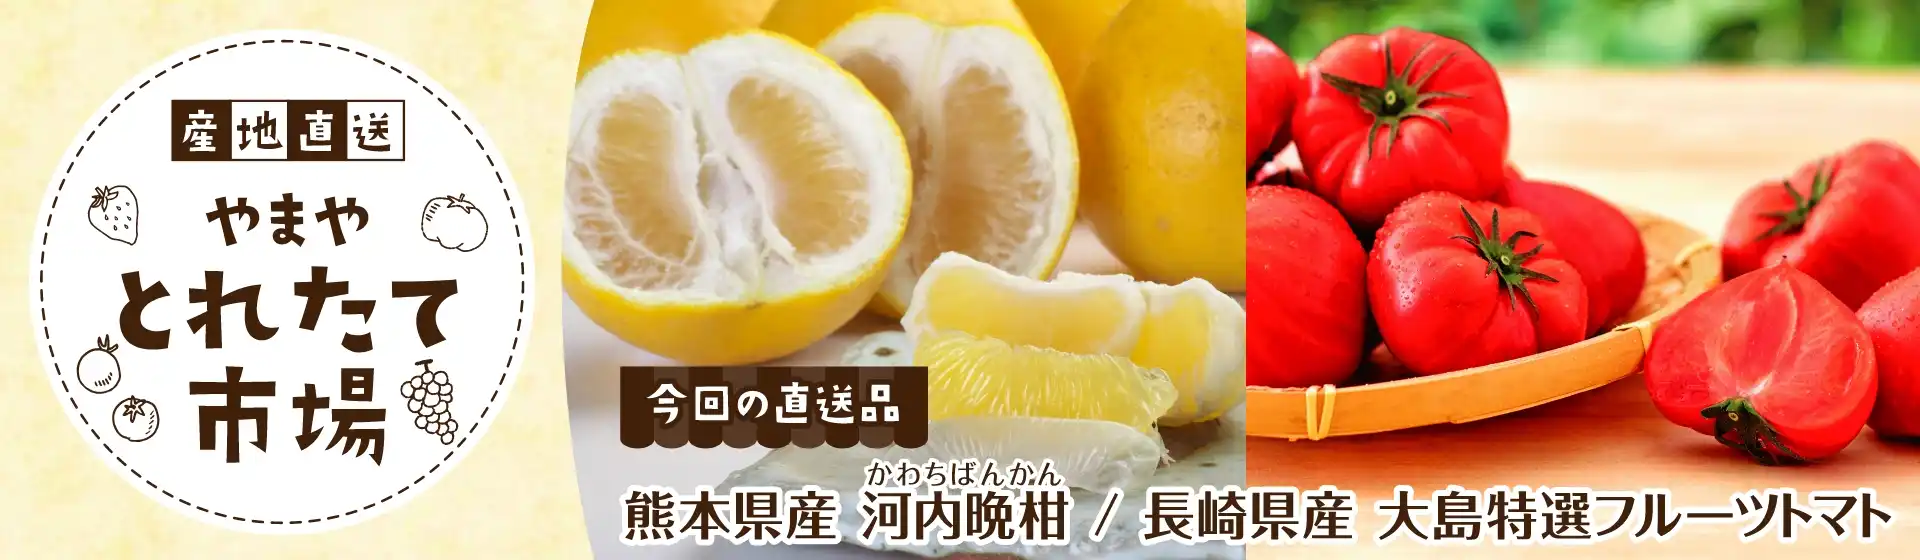 河内晩柑・大島特選フルーツトマト(とれたて市場)